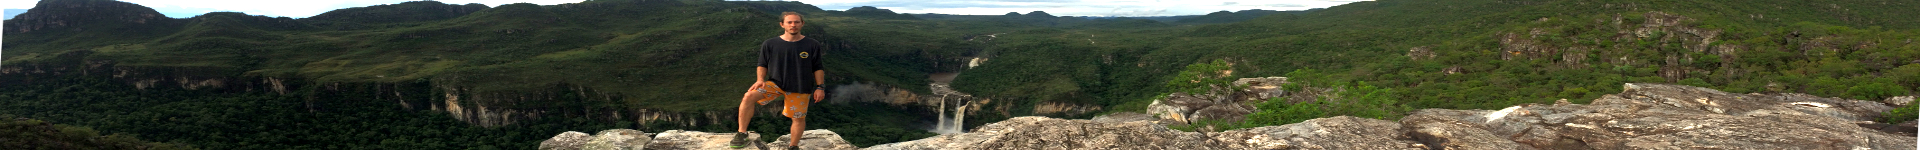 Cachoeiras do Salto 120 e 80 - Chapada dos Veadeiros, GO/Brasil